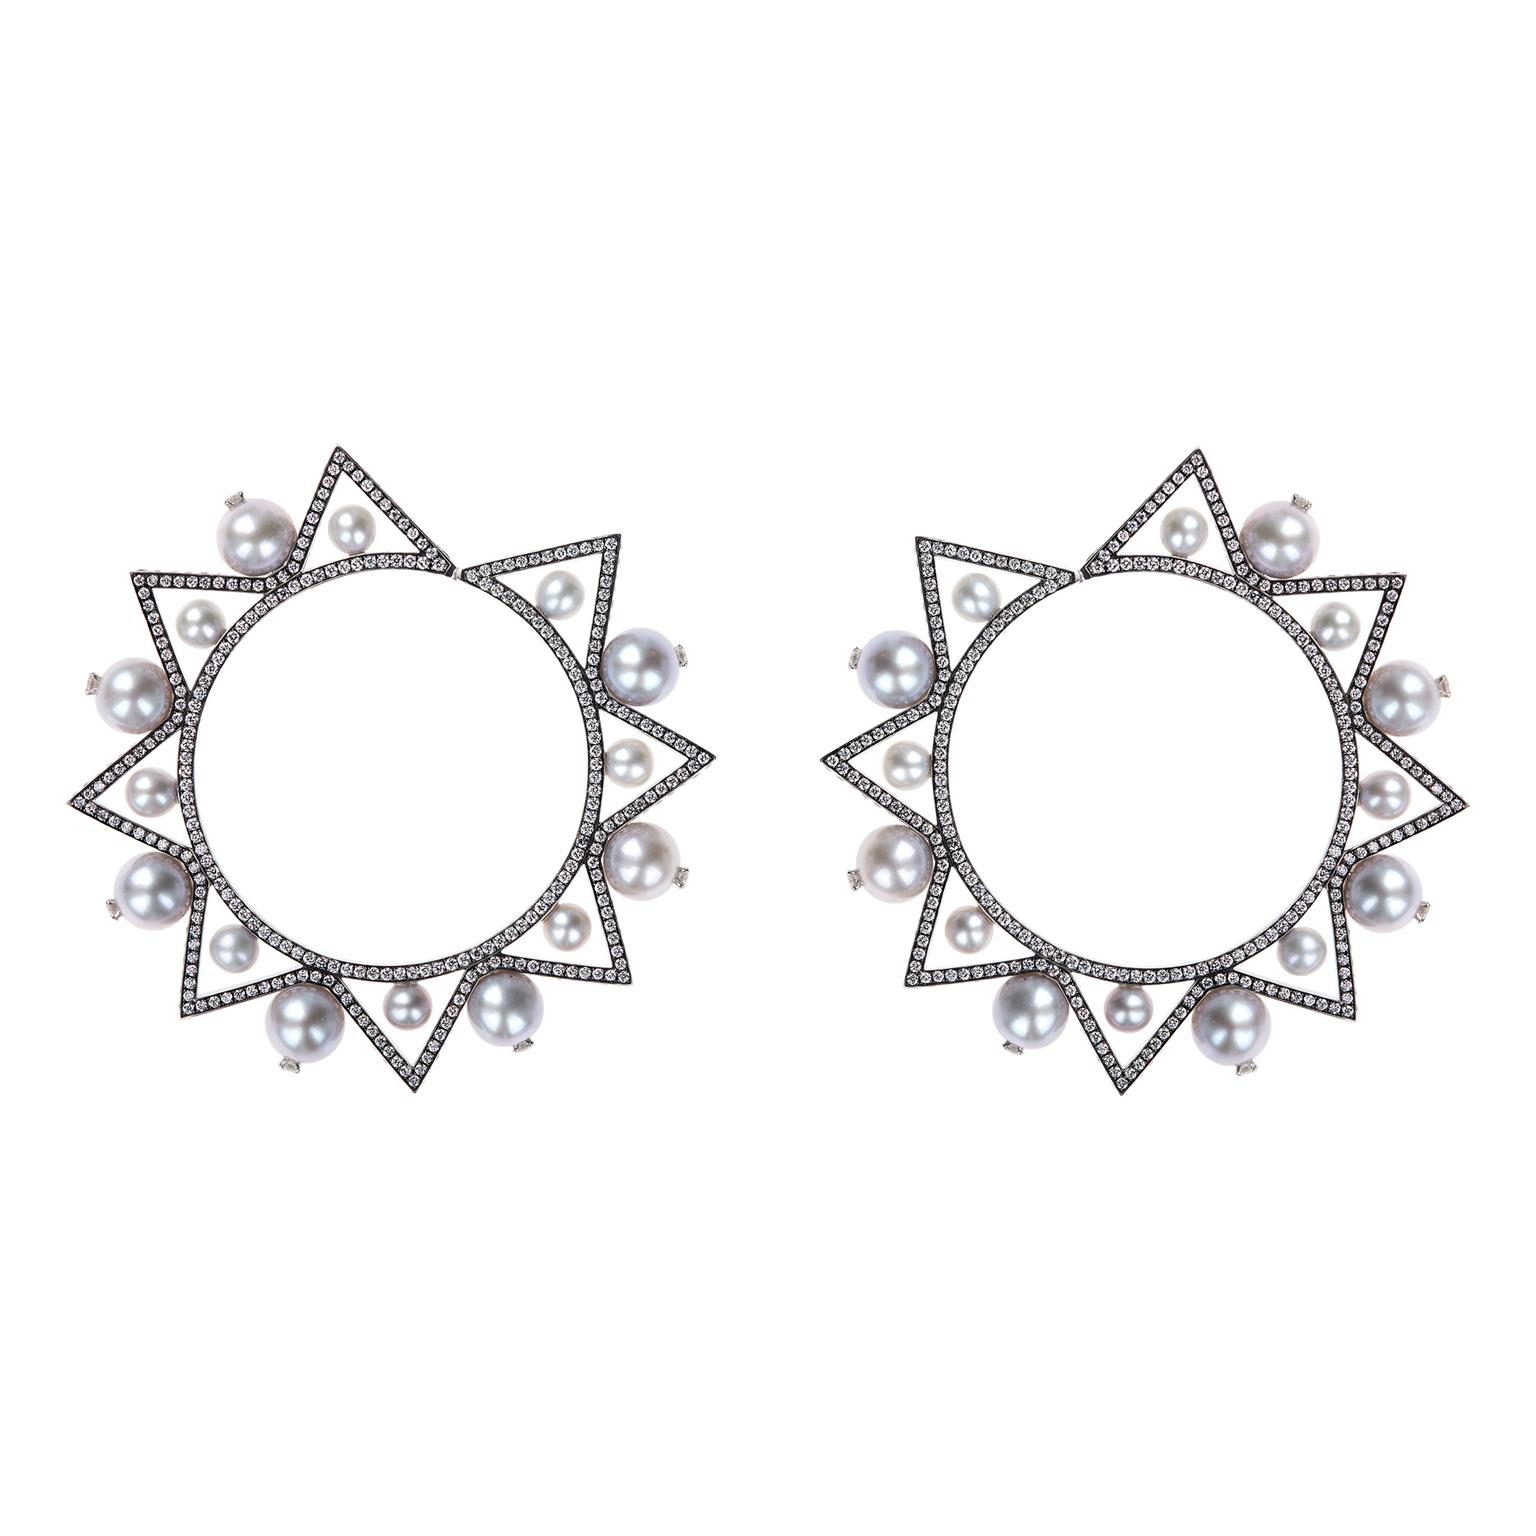 Nikos Koulis front-facing Lingerie hoop earrings